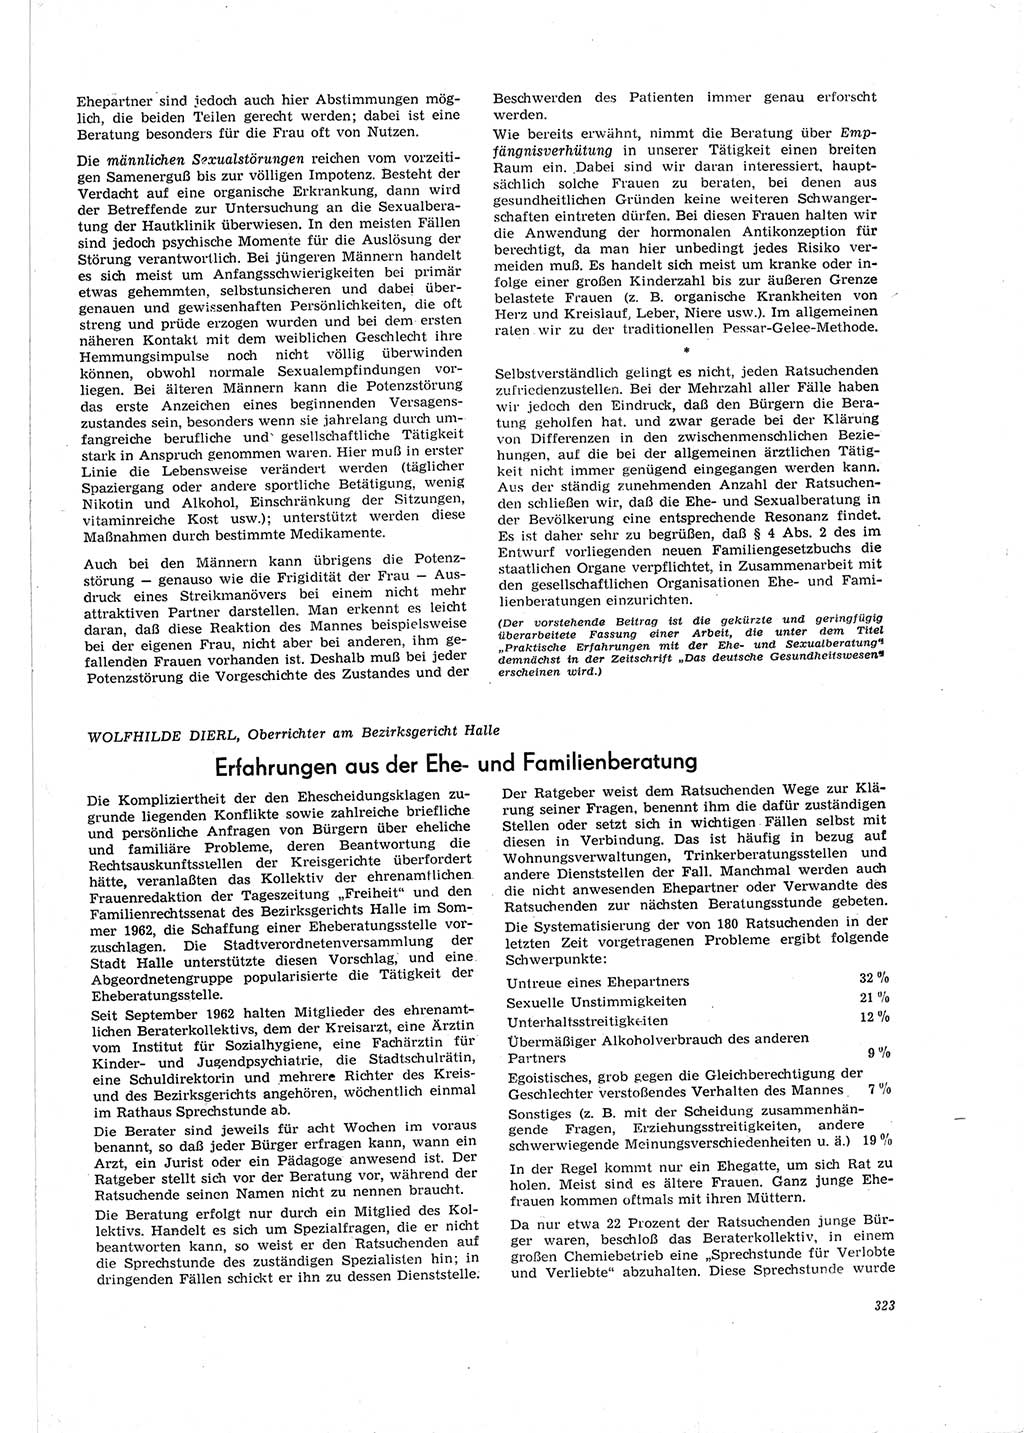 Neue Justiz (NJ), Zeitschrift für Recht und Rechtswissenschaft [Deutsche Demokratische Republik (DDR)], 19. Jahrgang 1965, Seite 323 (NJ DDR 1965, S. 323)